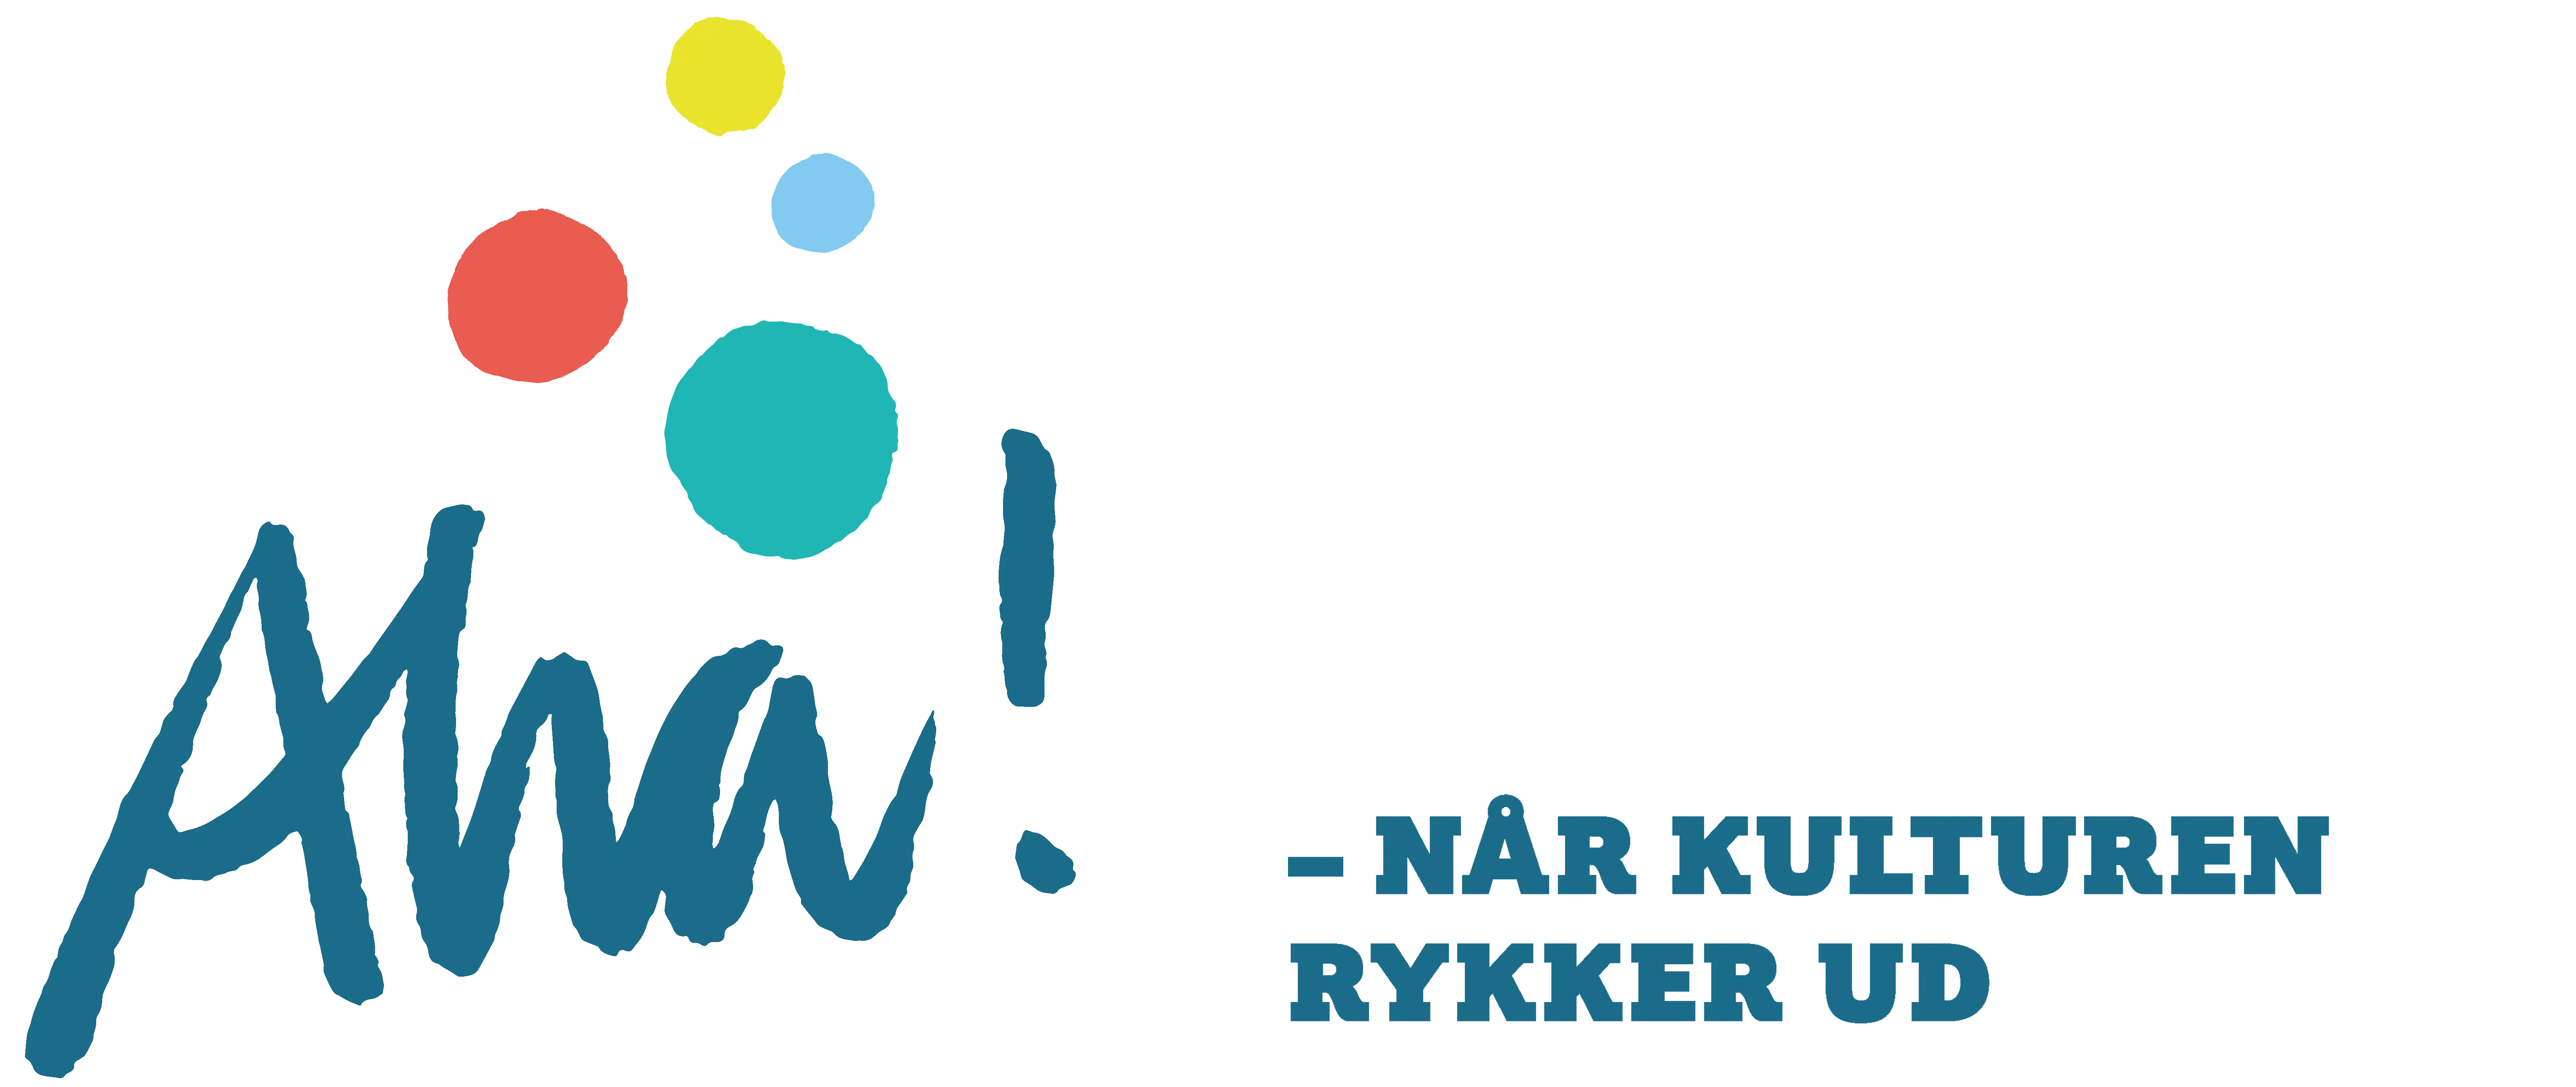 Logo for Kulturugen Aha